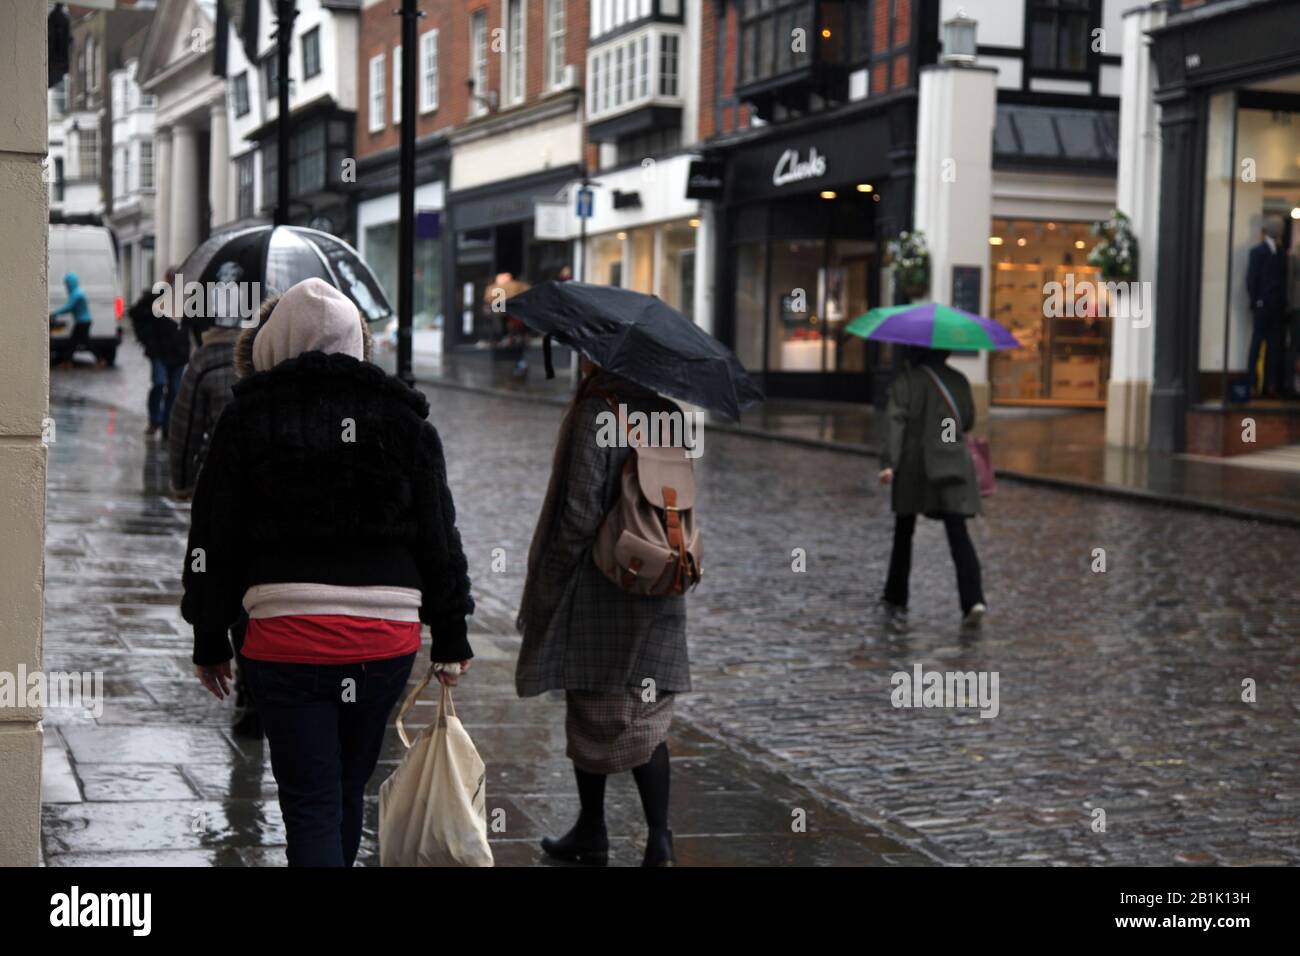 Fußgänger und Einkäufer, die im Regen spazieren gehen, shoppen mit Regenschirmen entlang der Guildford High Street, Guildford, Surrey, UK - Stockfoto